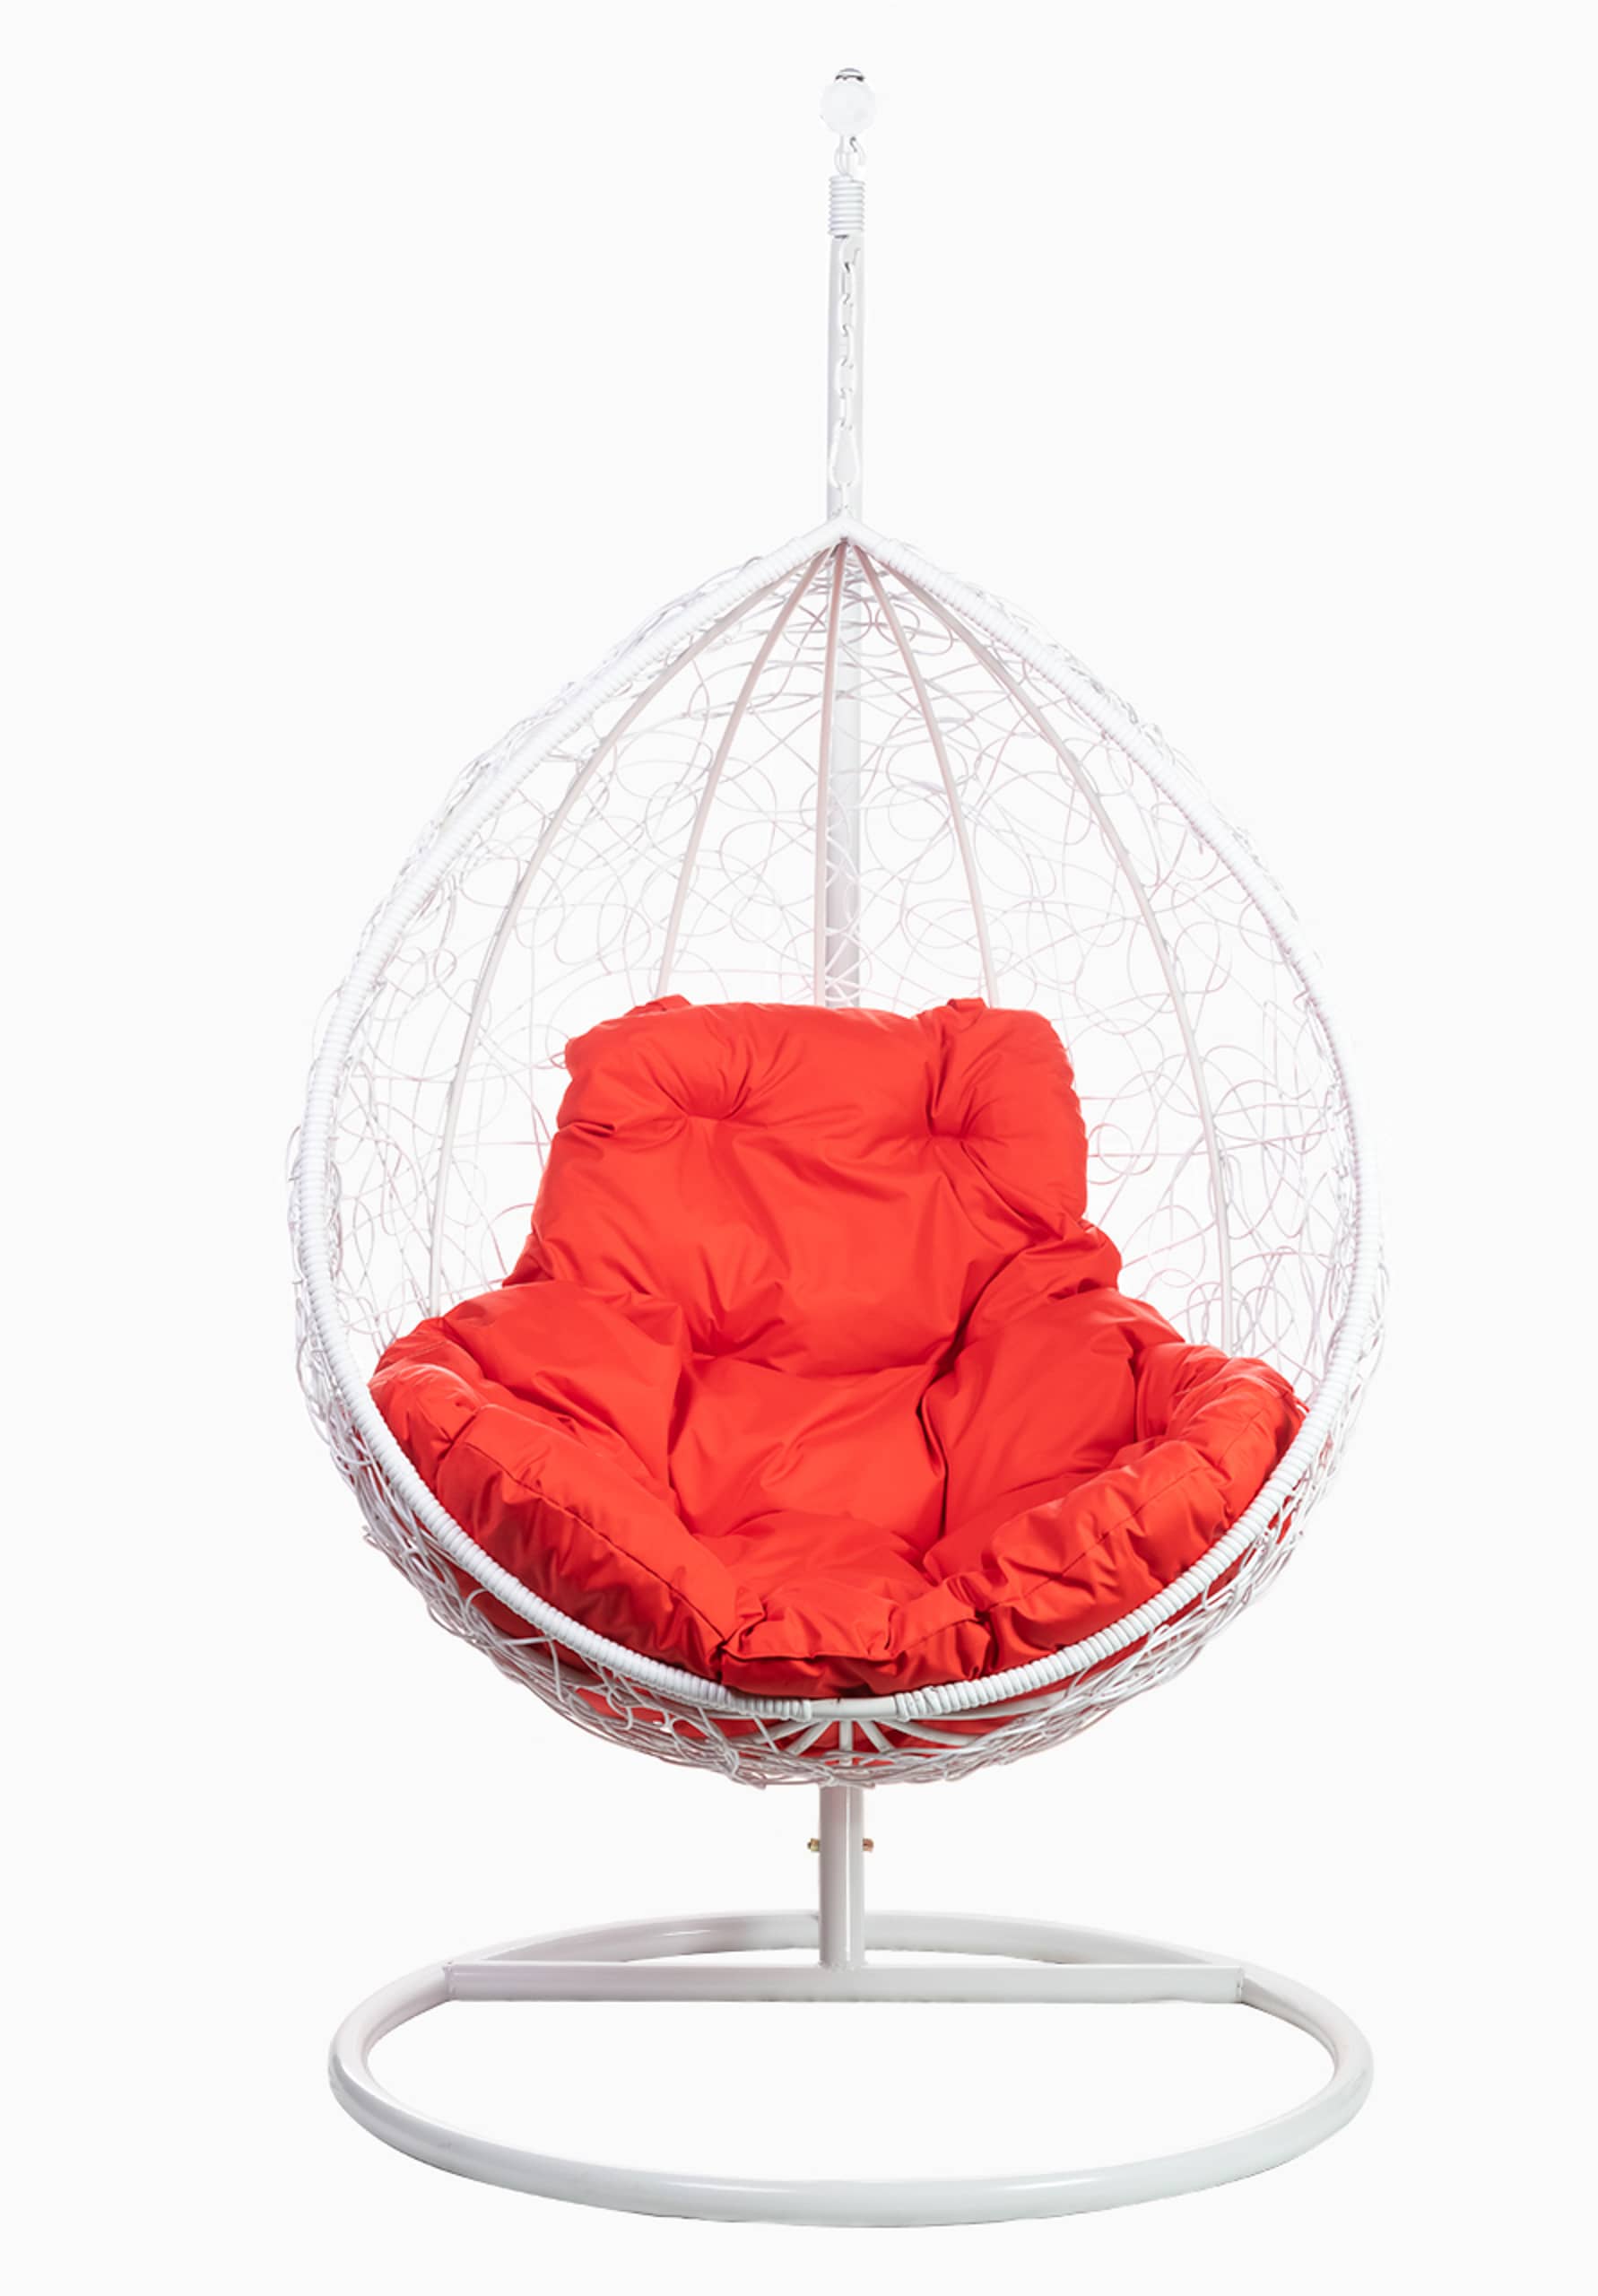 Кресло подвесное FP 0238 красная подушка - изображение 1